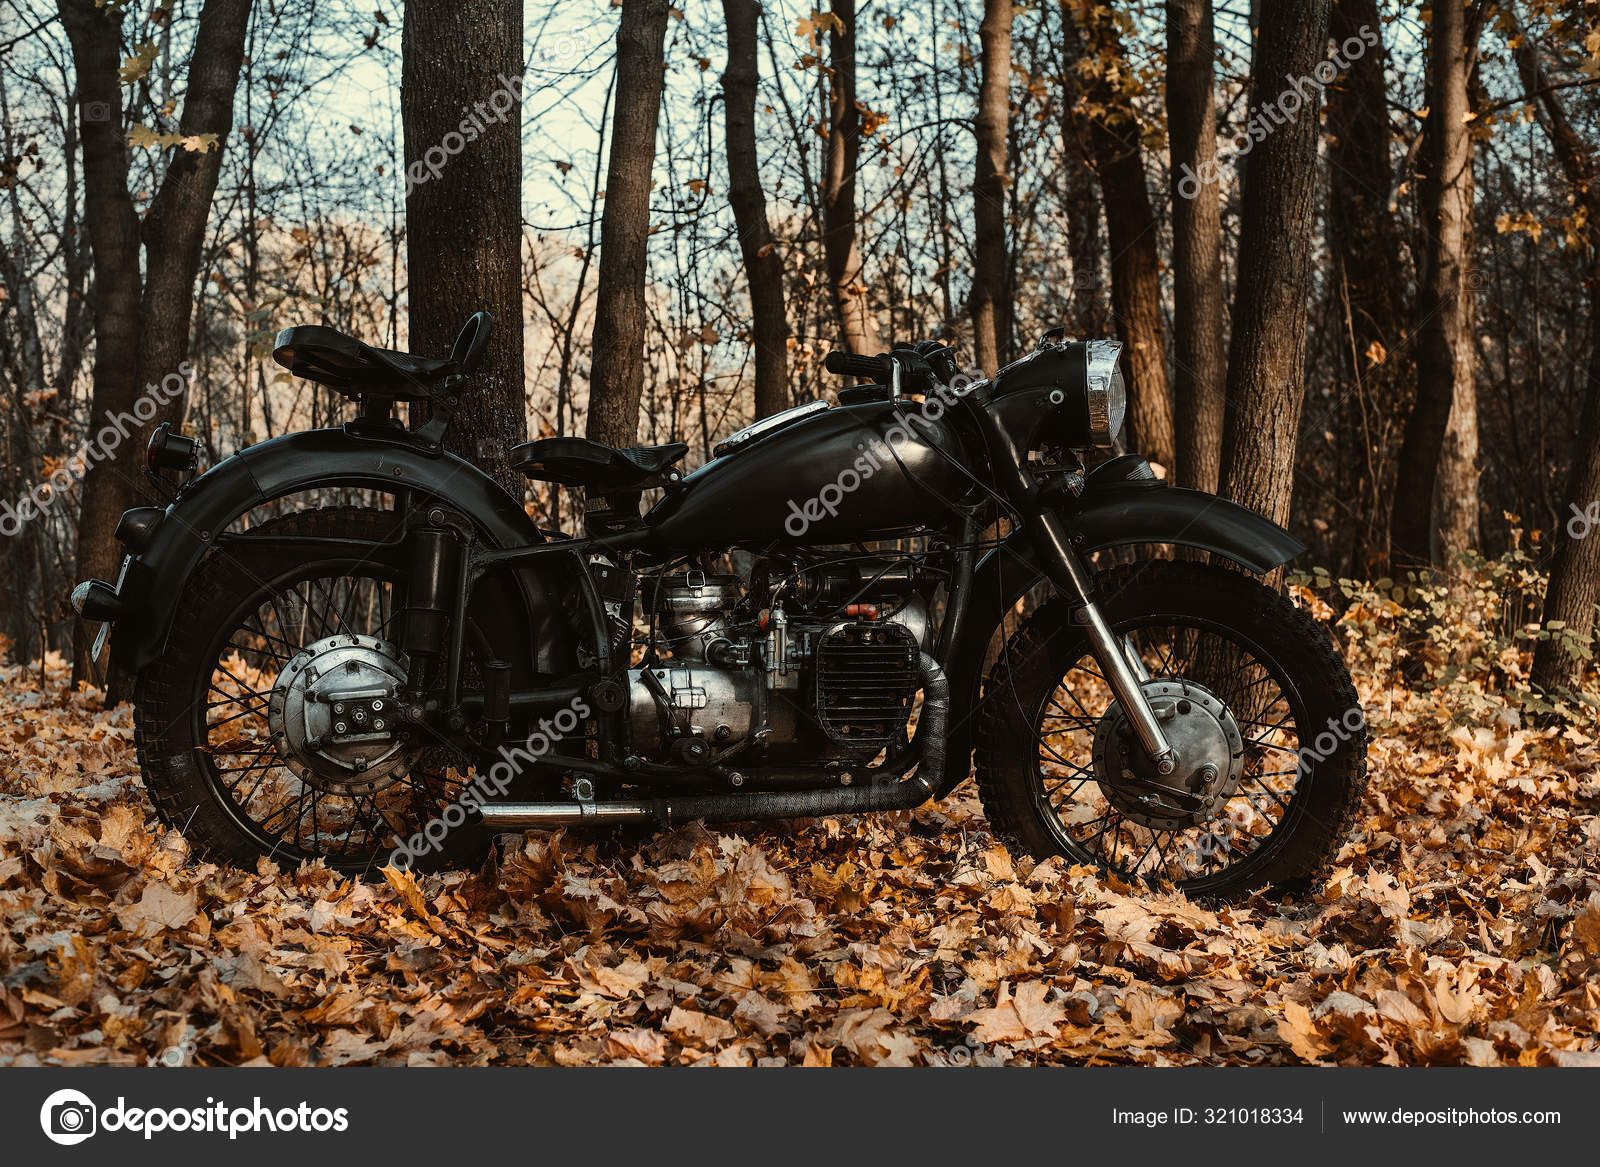 Gammel Russisk Motorcykel 750 Efteråret Træ – Redaktionelle stock-fotos © alekskluni #321018334